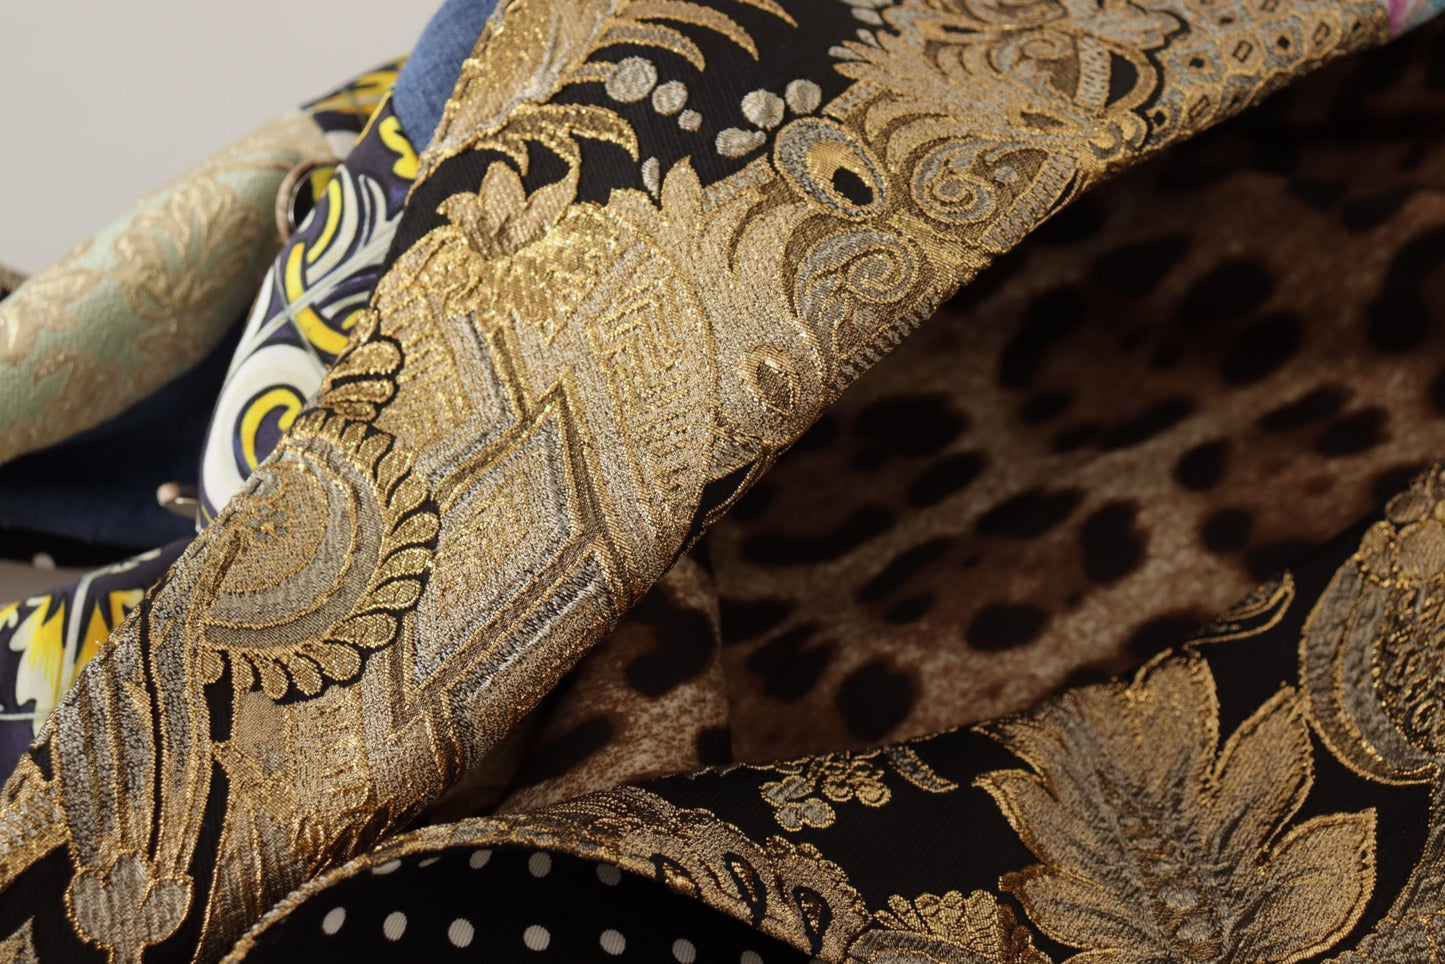 Dolce & Gabbana Multicolore a doppio petto di patchwork Jacquar Blazer Jacker